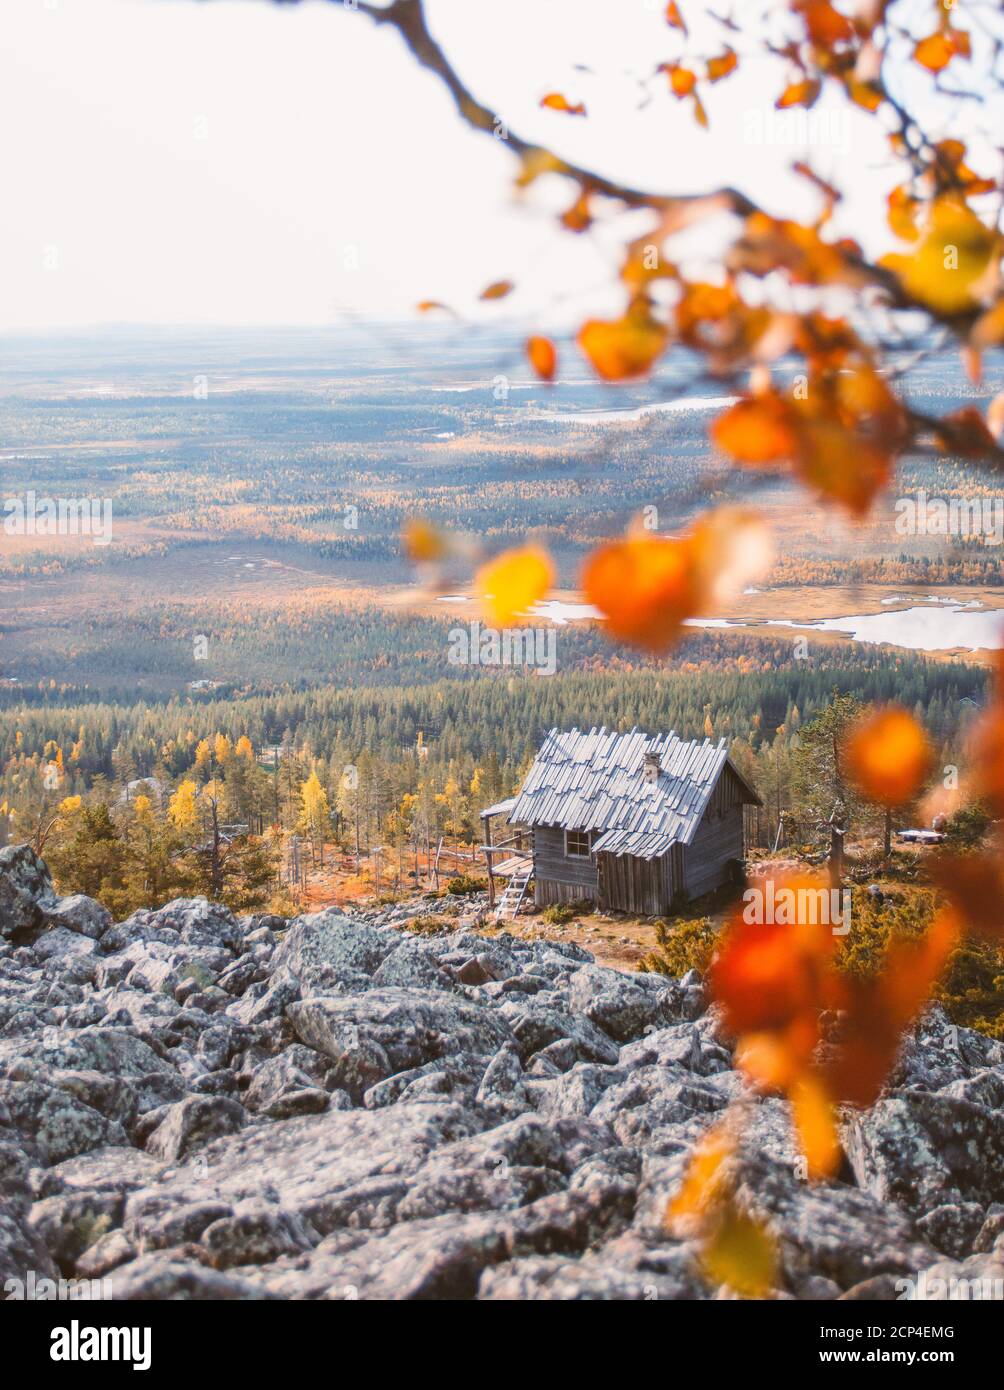 La cabina di Babbo Natale a Levi, Finlandia, è una gemma nascosta quando si visita Lapponia. Questa cabina è stata costruita per il film Christmas Story (Joulutarina). Foto Stock